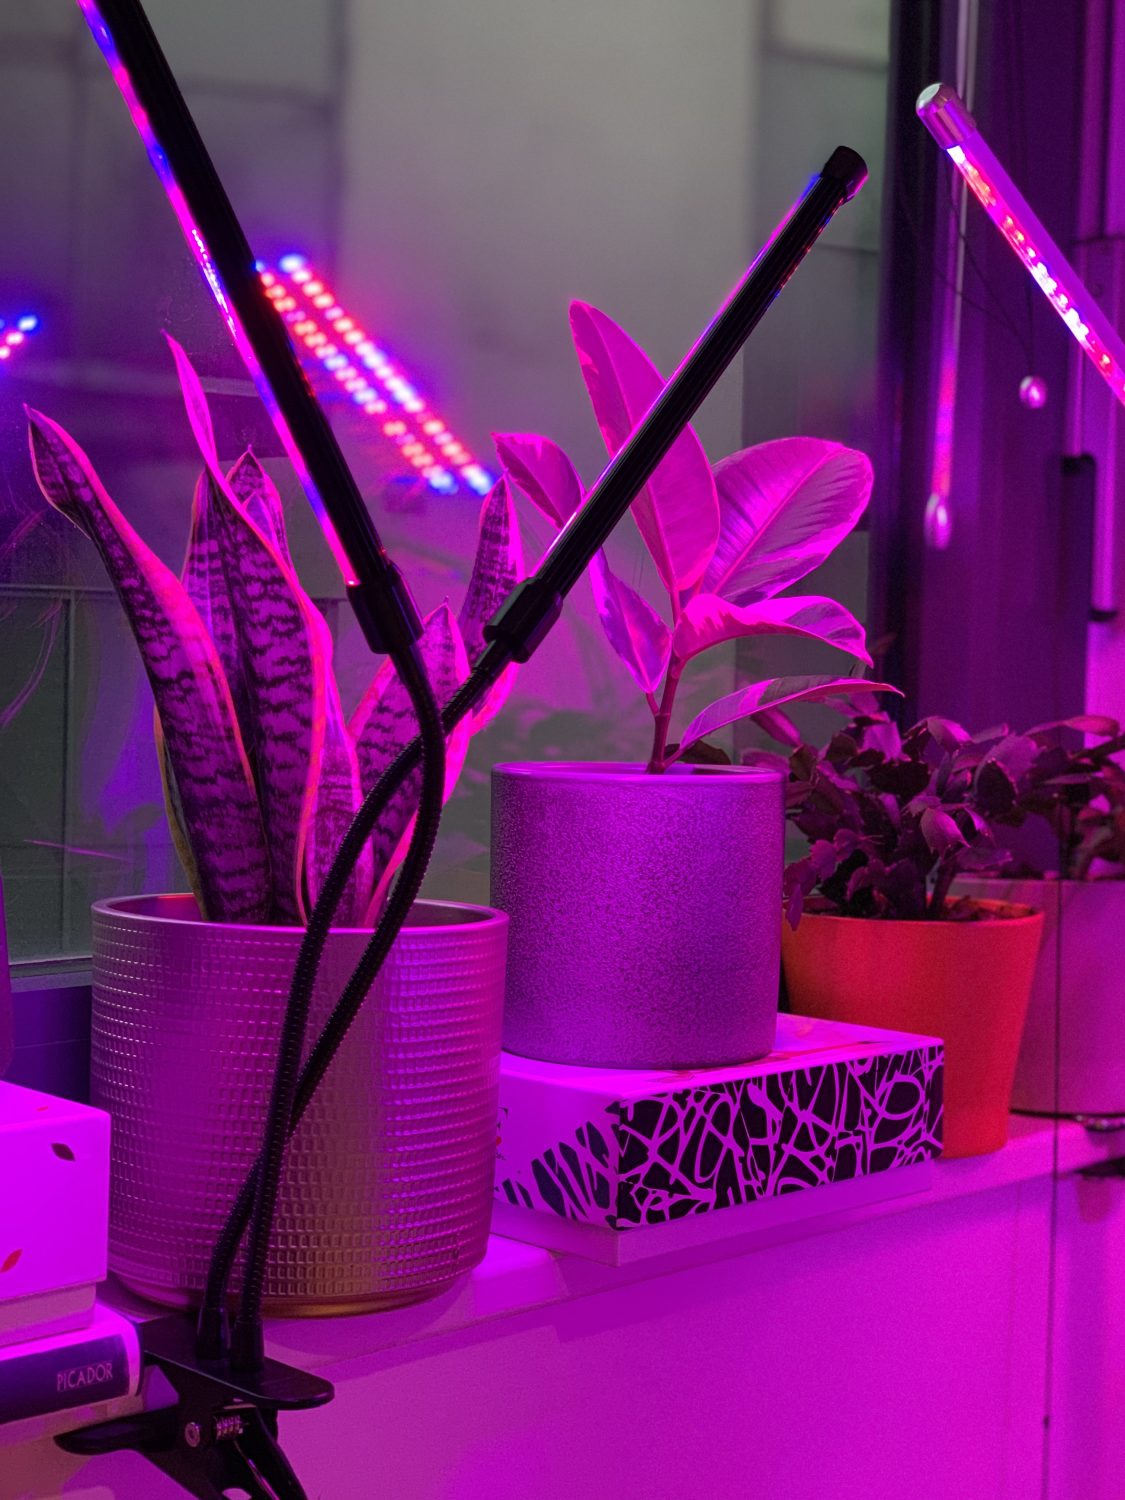 grow lights for indoor plants download free